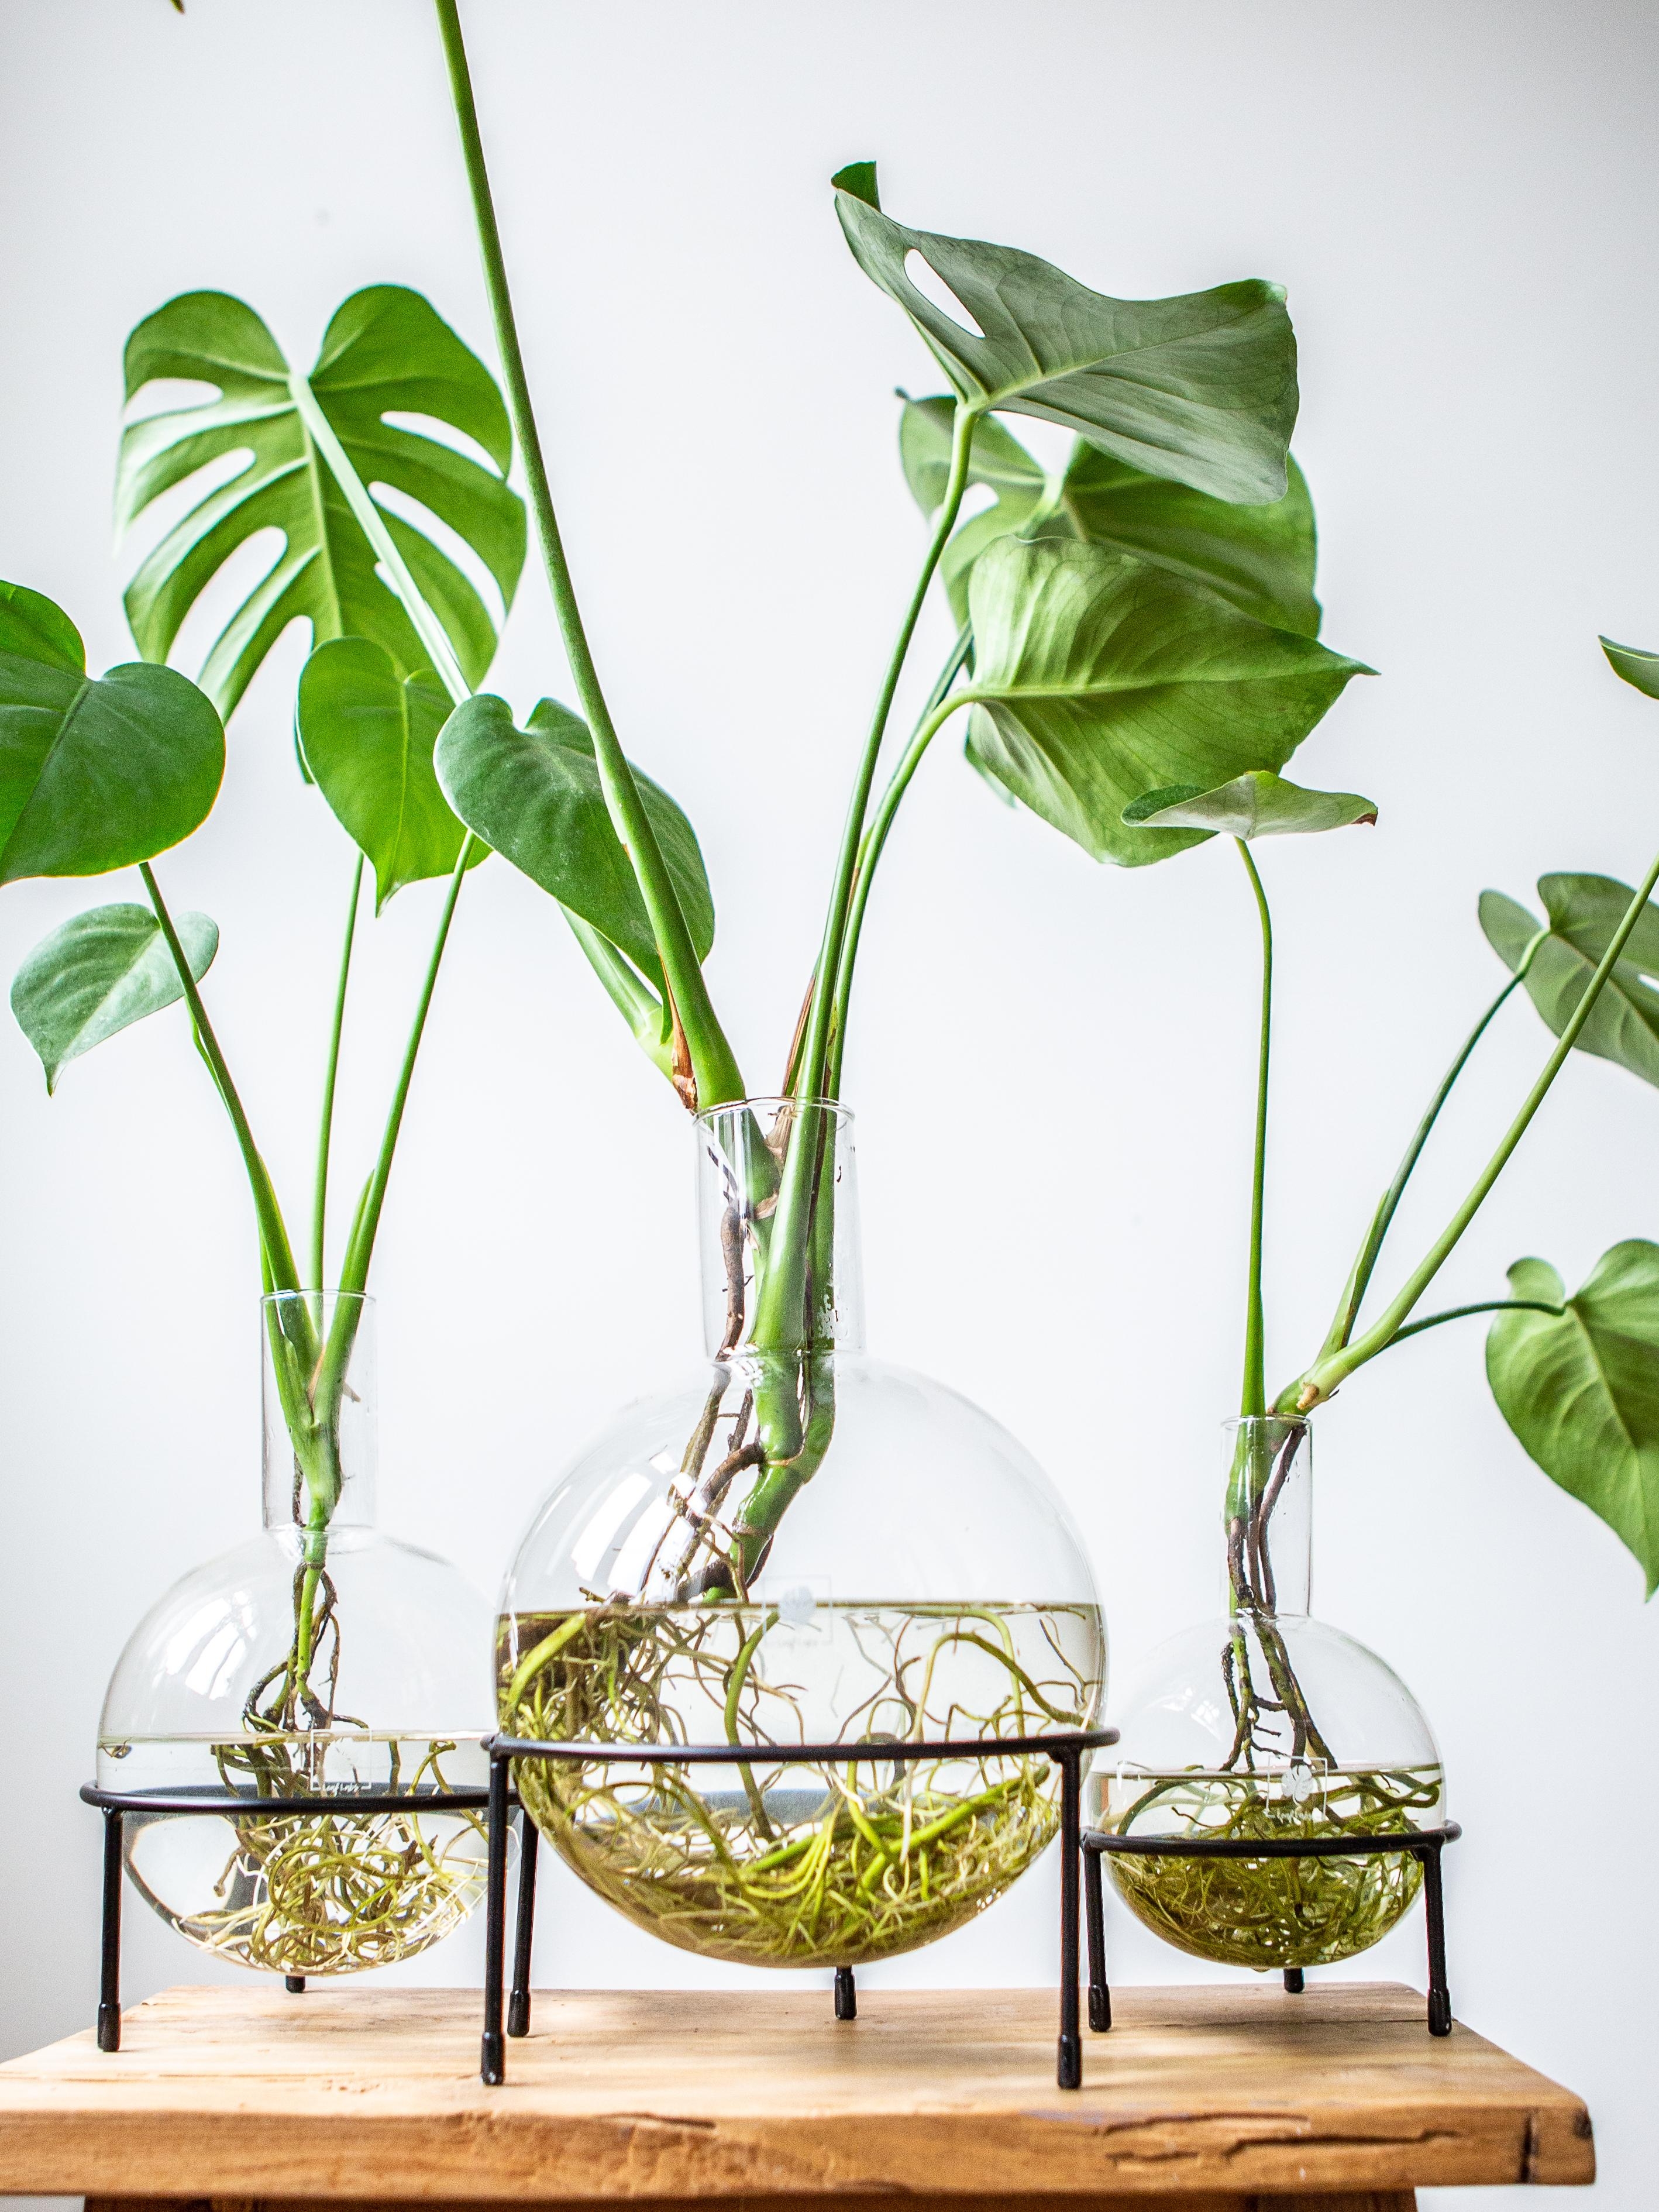 Mach deine Pflanzen zum Blickfang! 
https://leaf-labs.de/
#einfachschön #niewiedergießen #greenliving #Pflanzemitstil